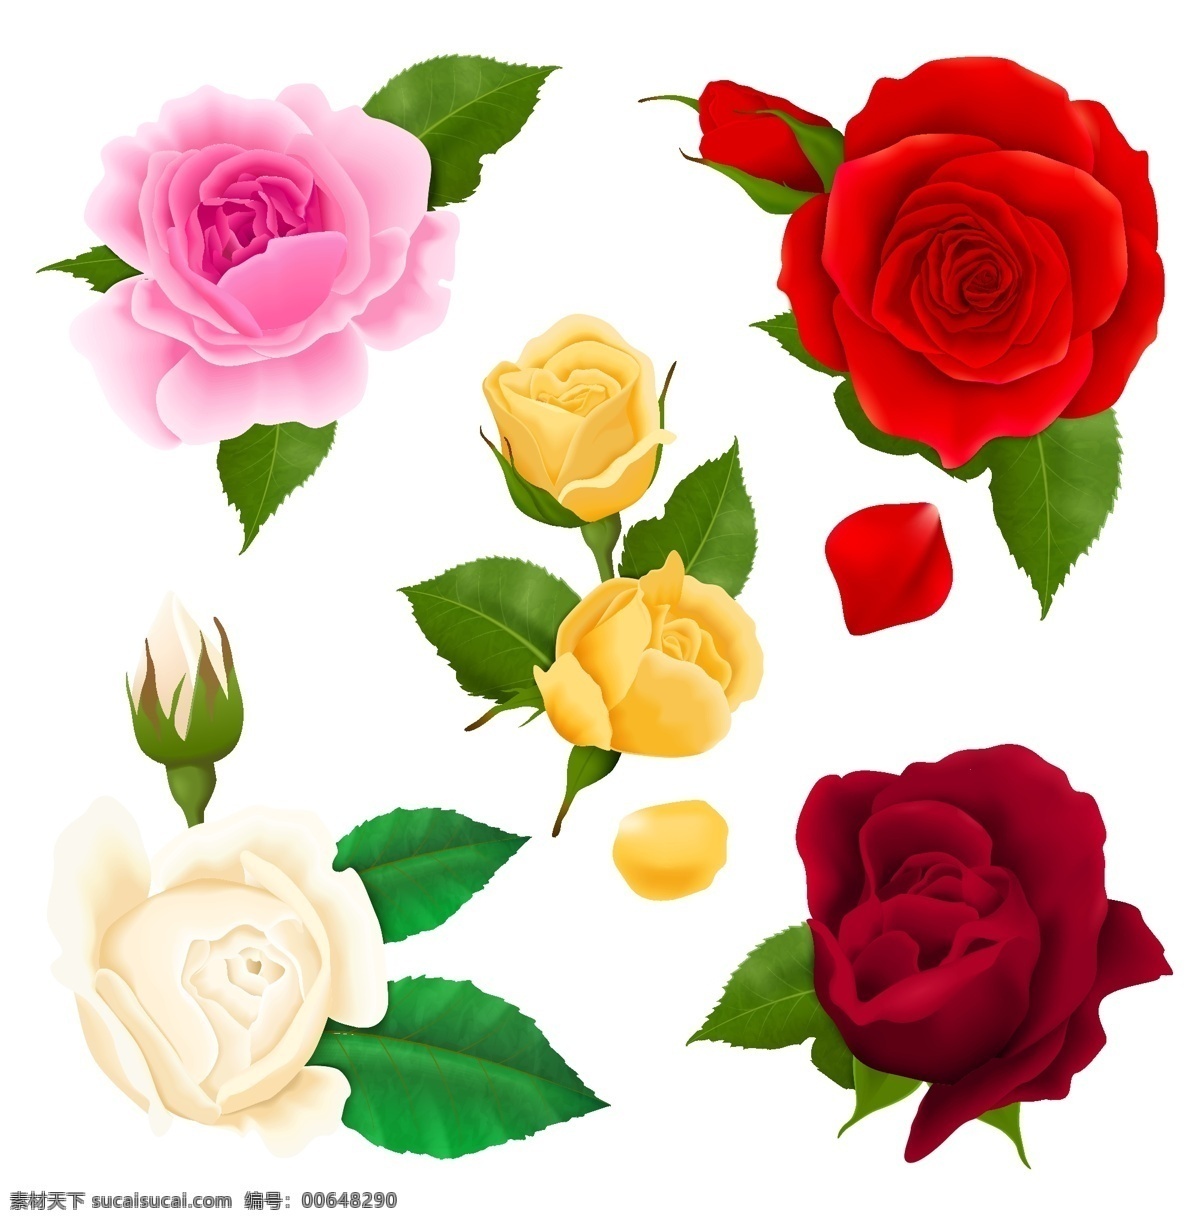 水彩玫瑰花 玫瑰花 水彩 手绘 花朵 淡彩 花背景 花素材 玫瑰 生物世界 花草